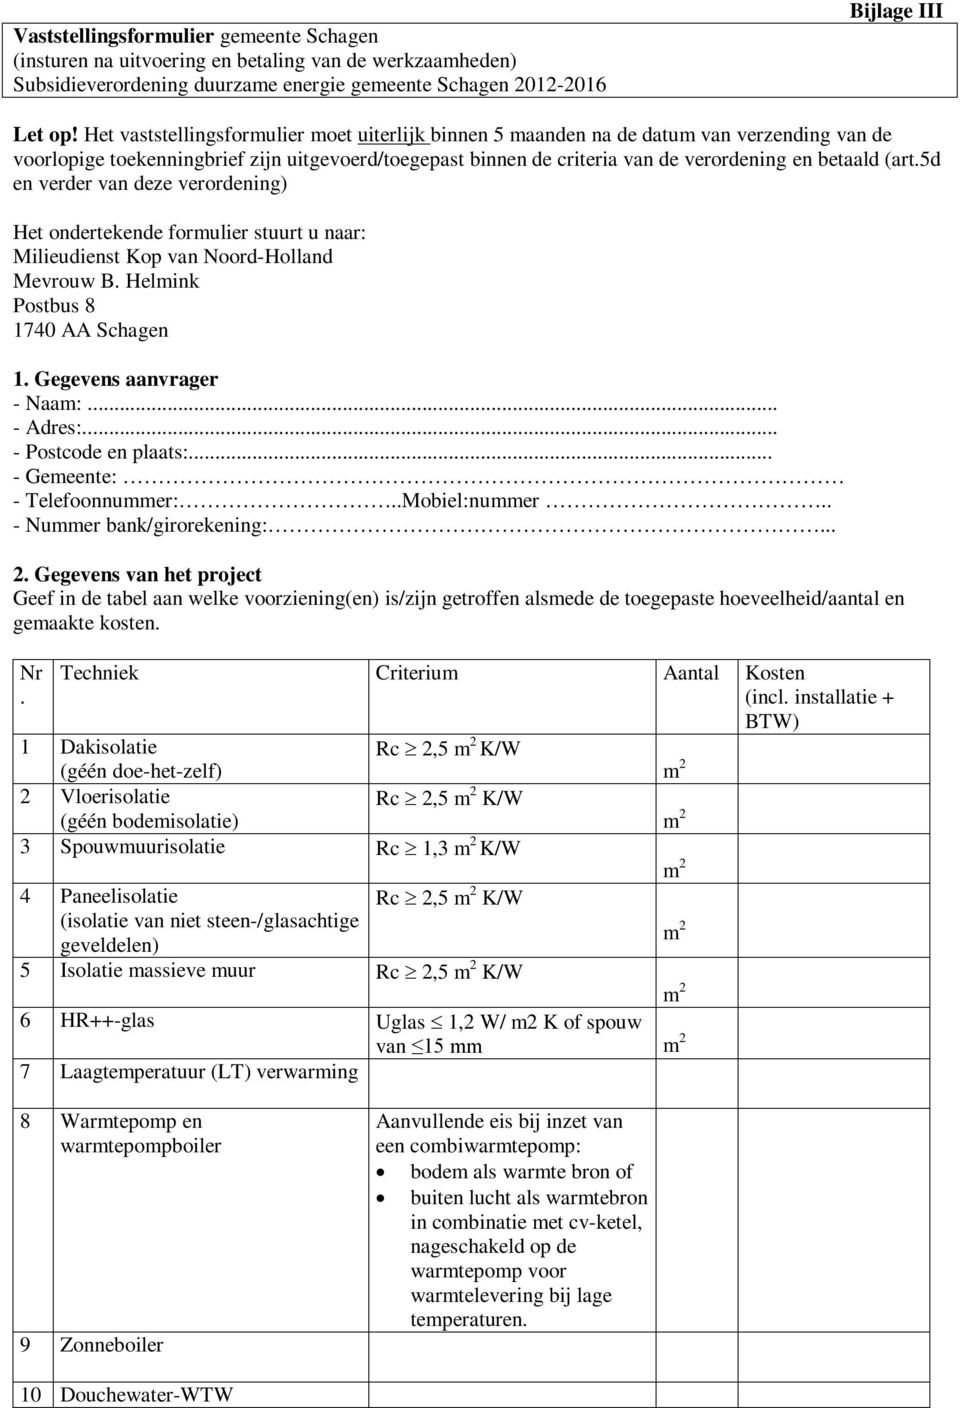 5d en verder van deze verordening) Het ondertekende formulier stuurt u naar: Milieudienst Kop van Noord-Holland Mevrouw B. Helmink Postbus 8 1740 AA Schagen 1. Gegevens aanvrager - Naam:... - Adres:.